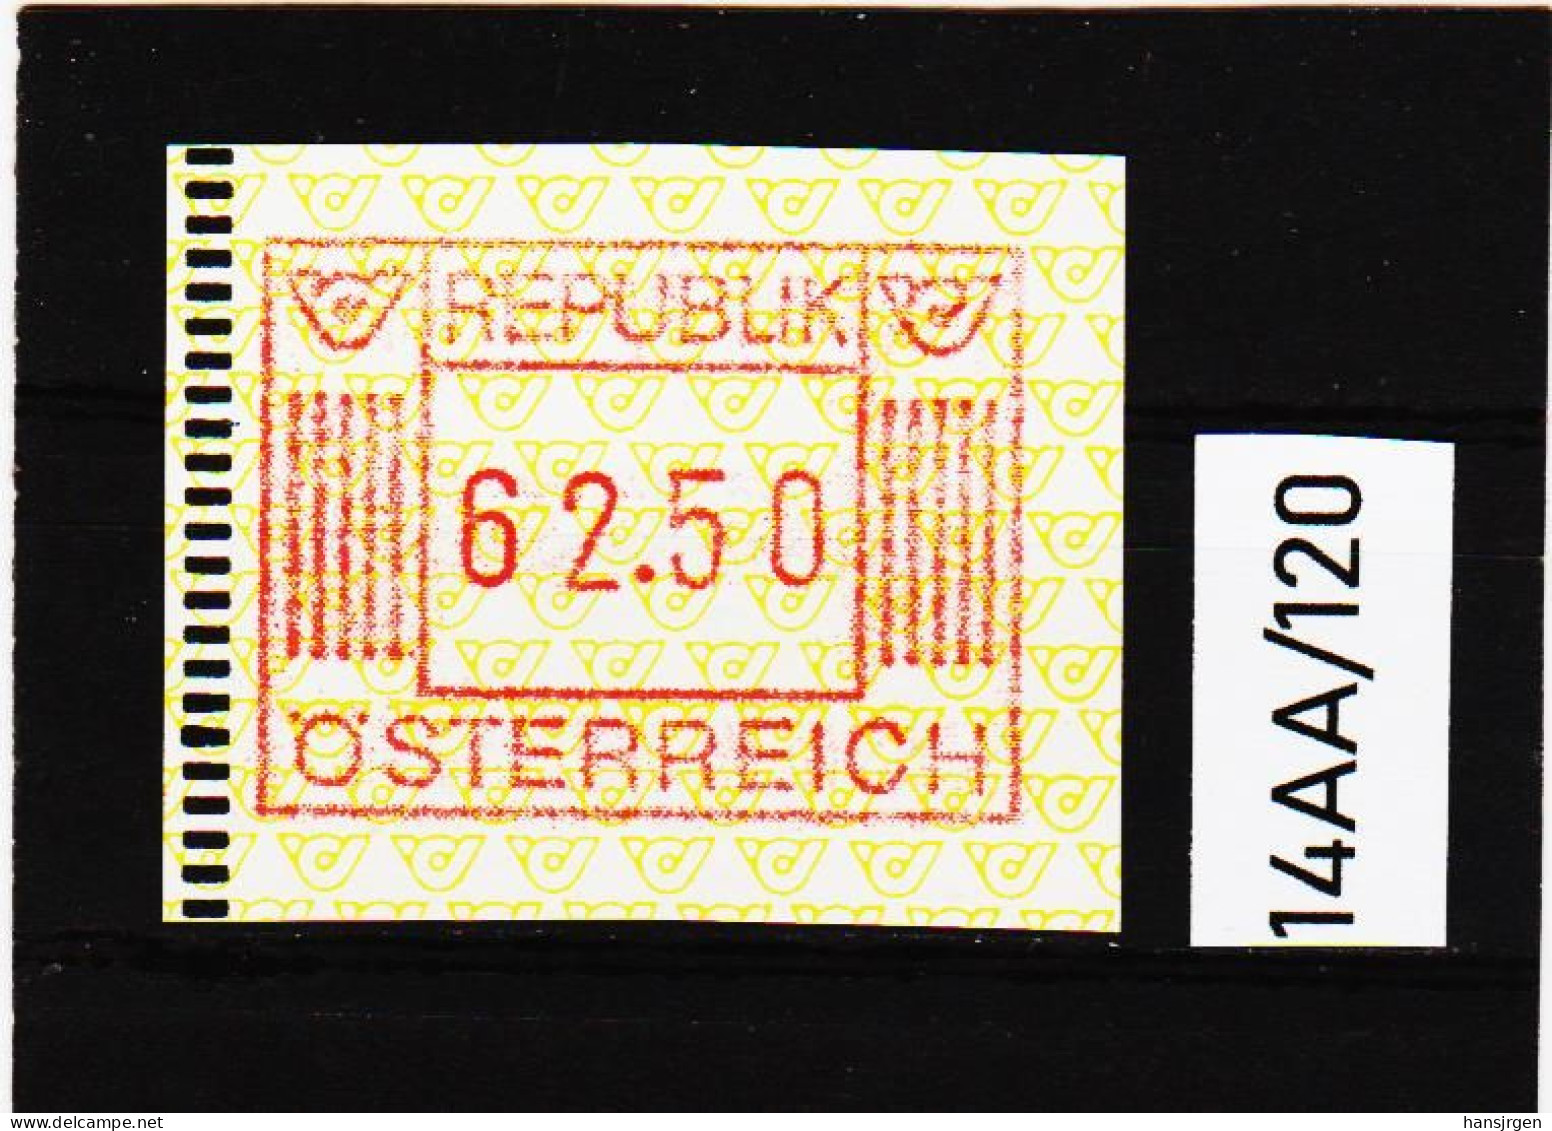 14AA/120  ÖSTERREICH 1983 AUTOMATENMARKEN  A N K  1. AUSGABE  62,50 SCHILLING   ** Postfrisch - Machine Labels [ATM]